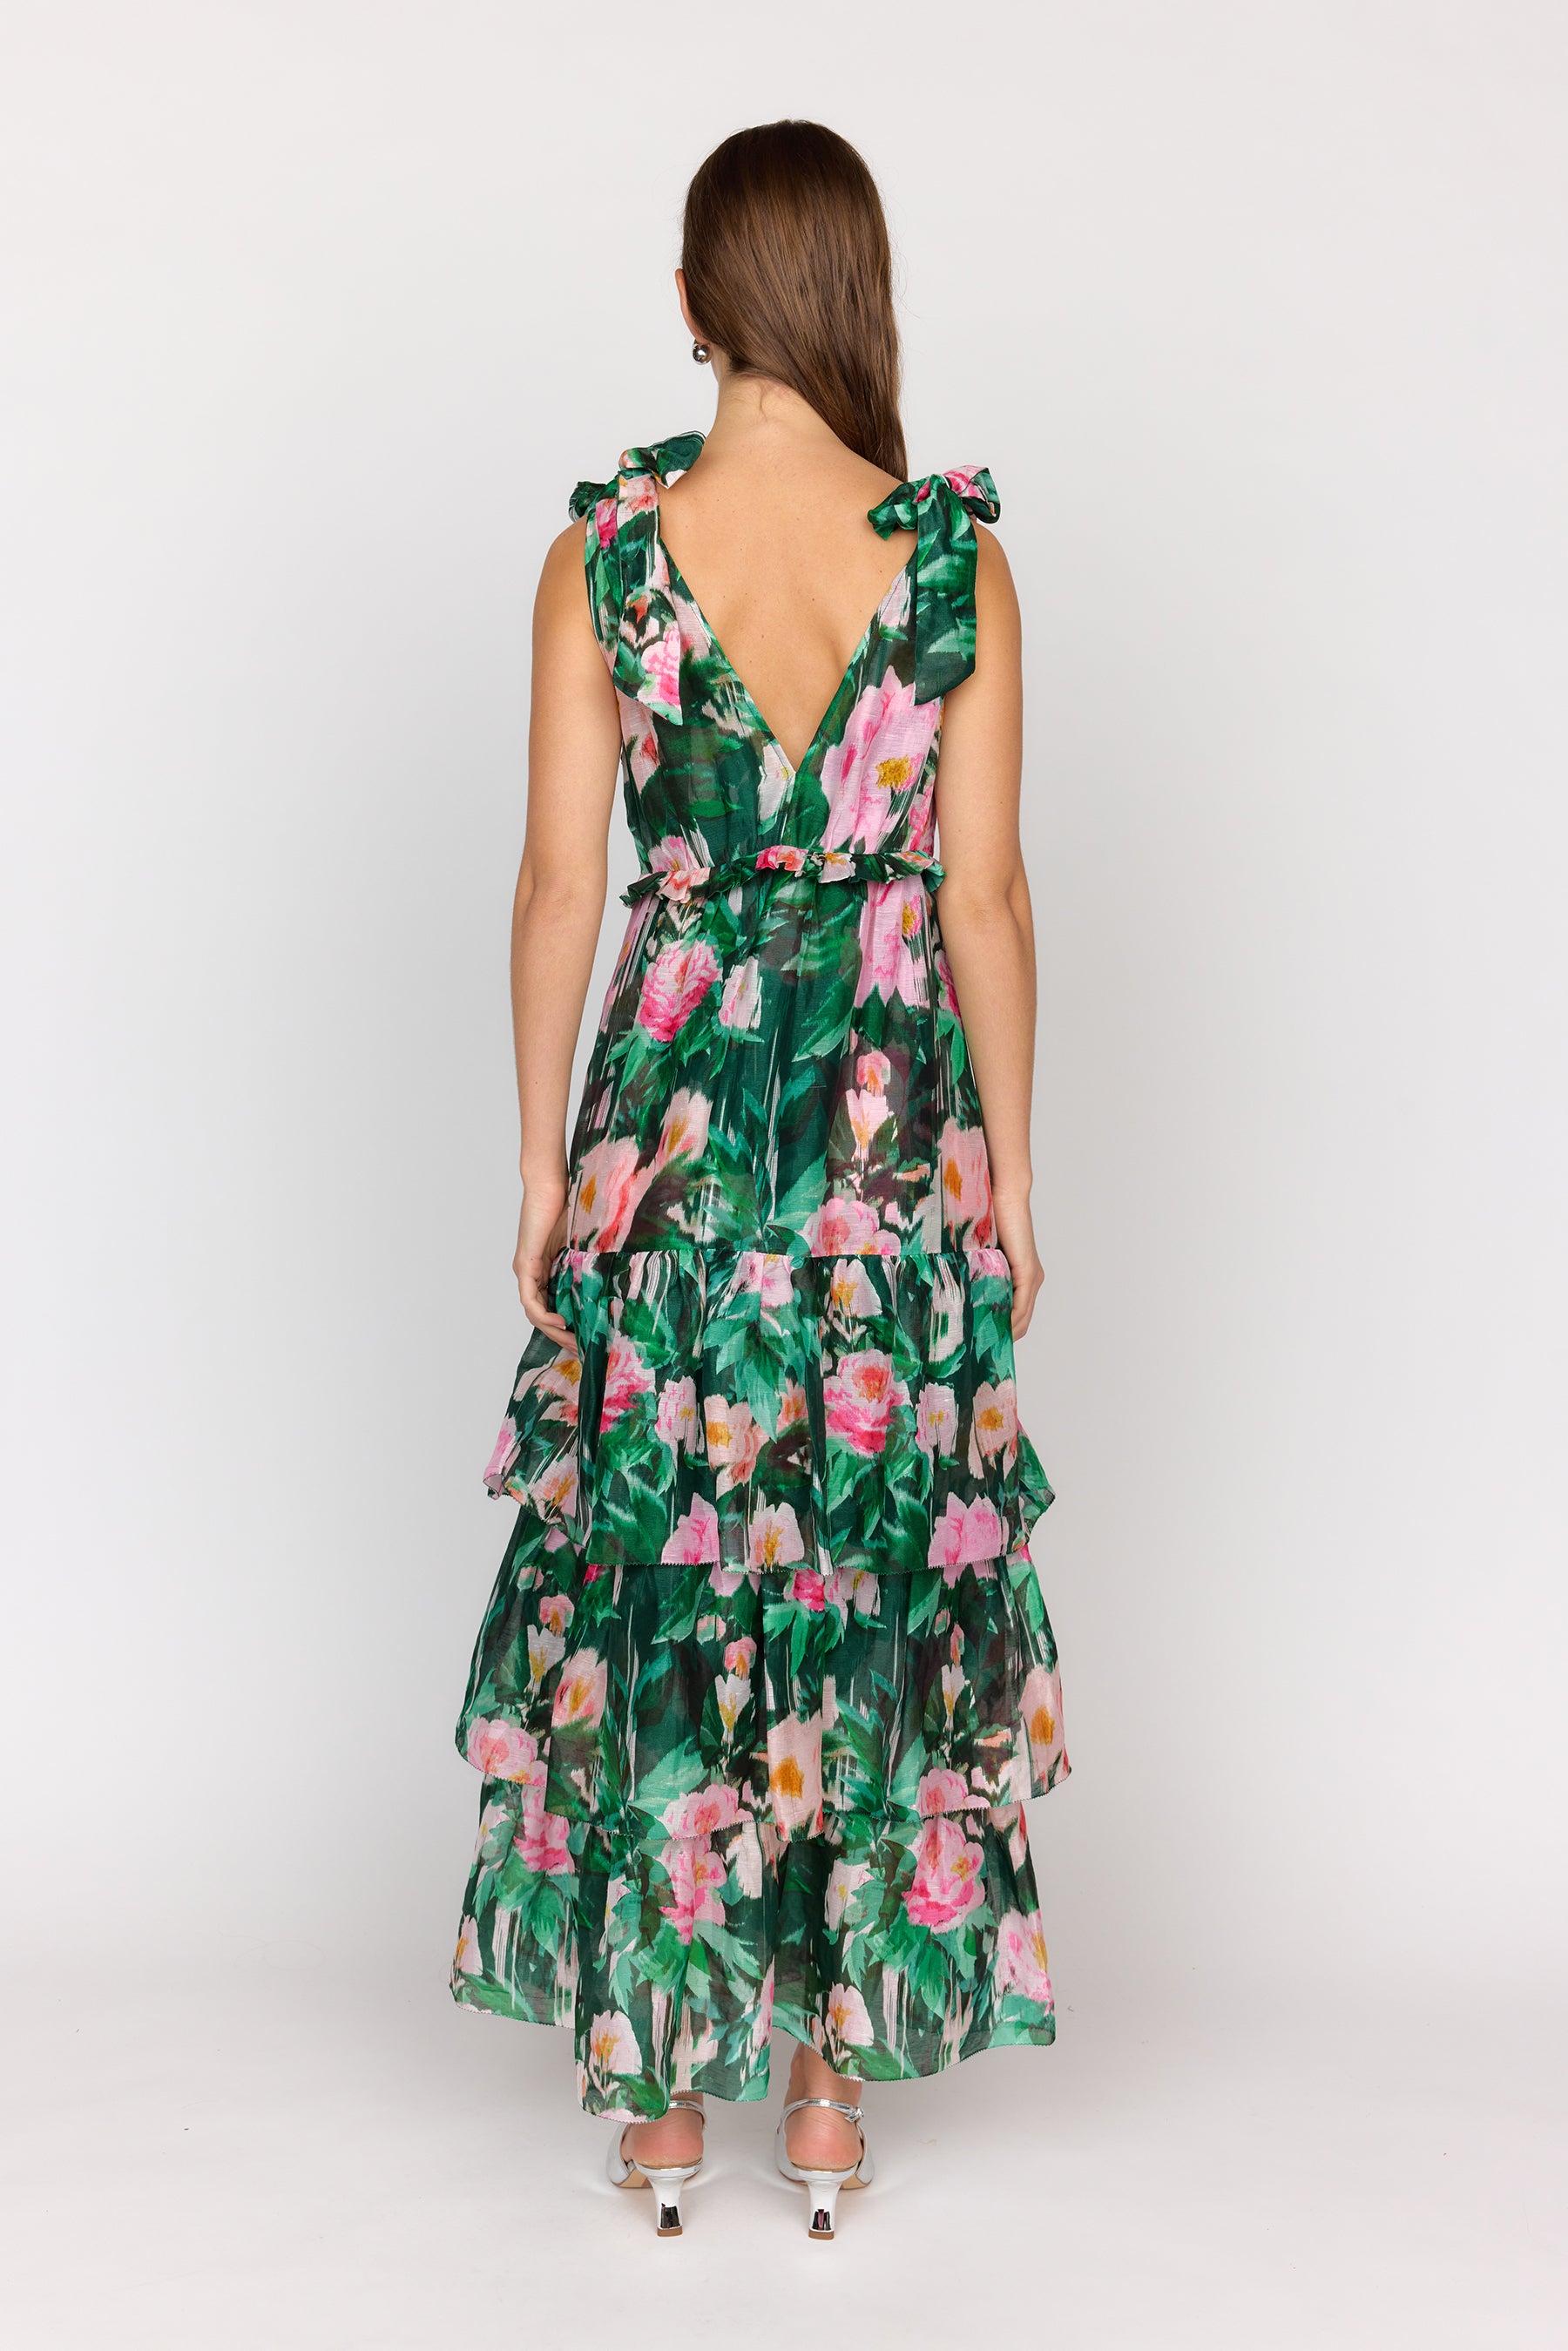 Alexa Dress - Camellia Garden